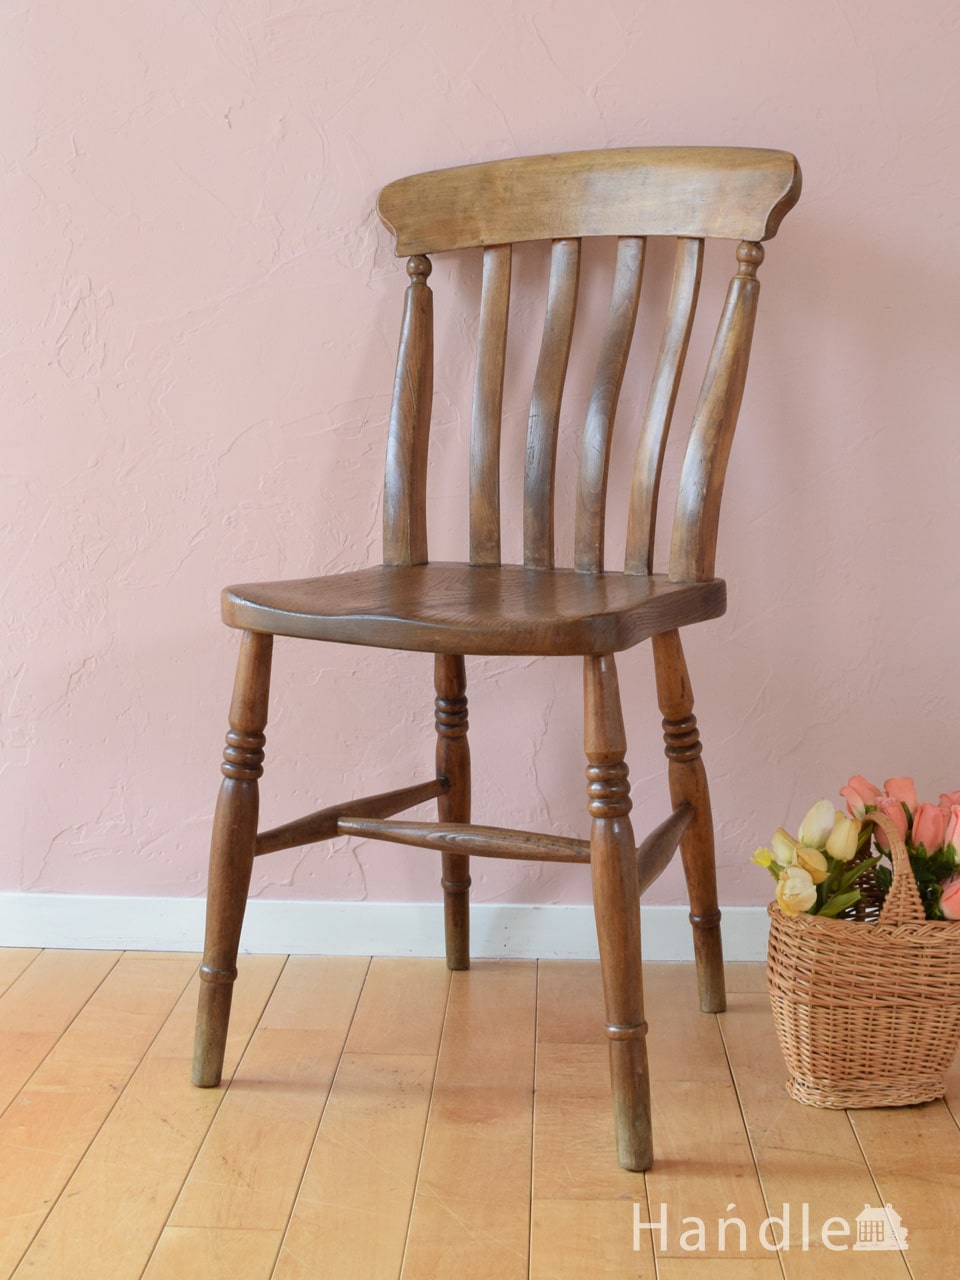 イギリスで見つけたアンティークの椅子、ナチュラル感漂うキッチンチェア (k-1805-c)